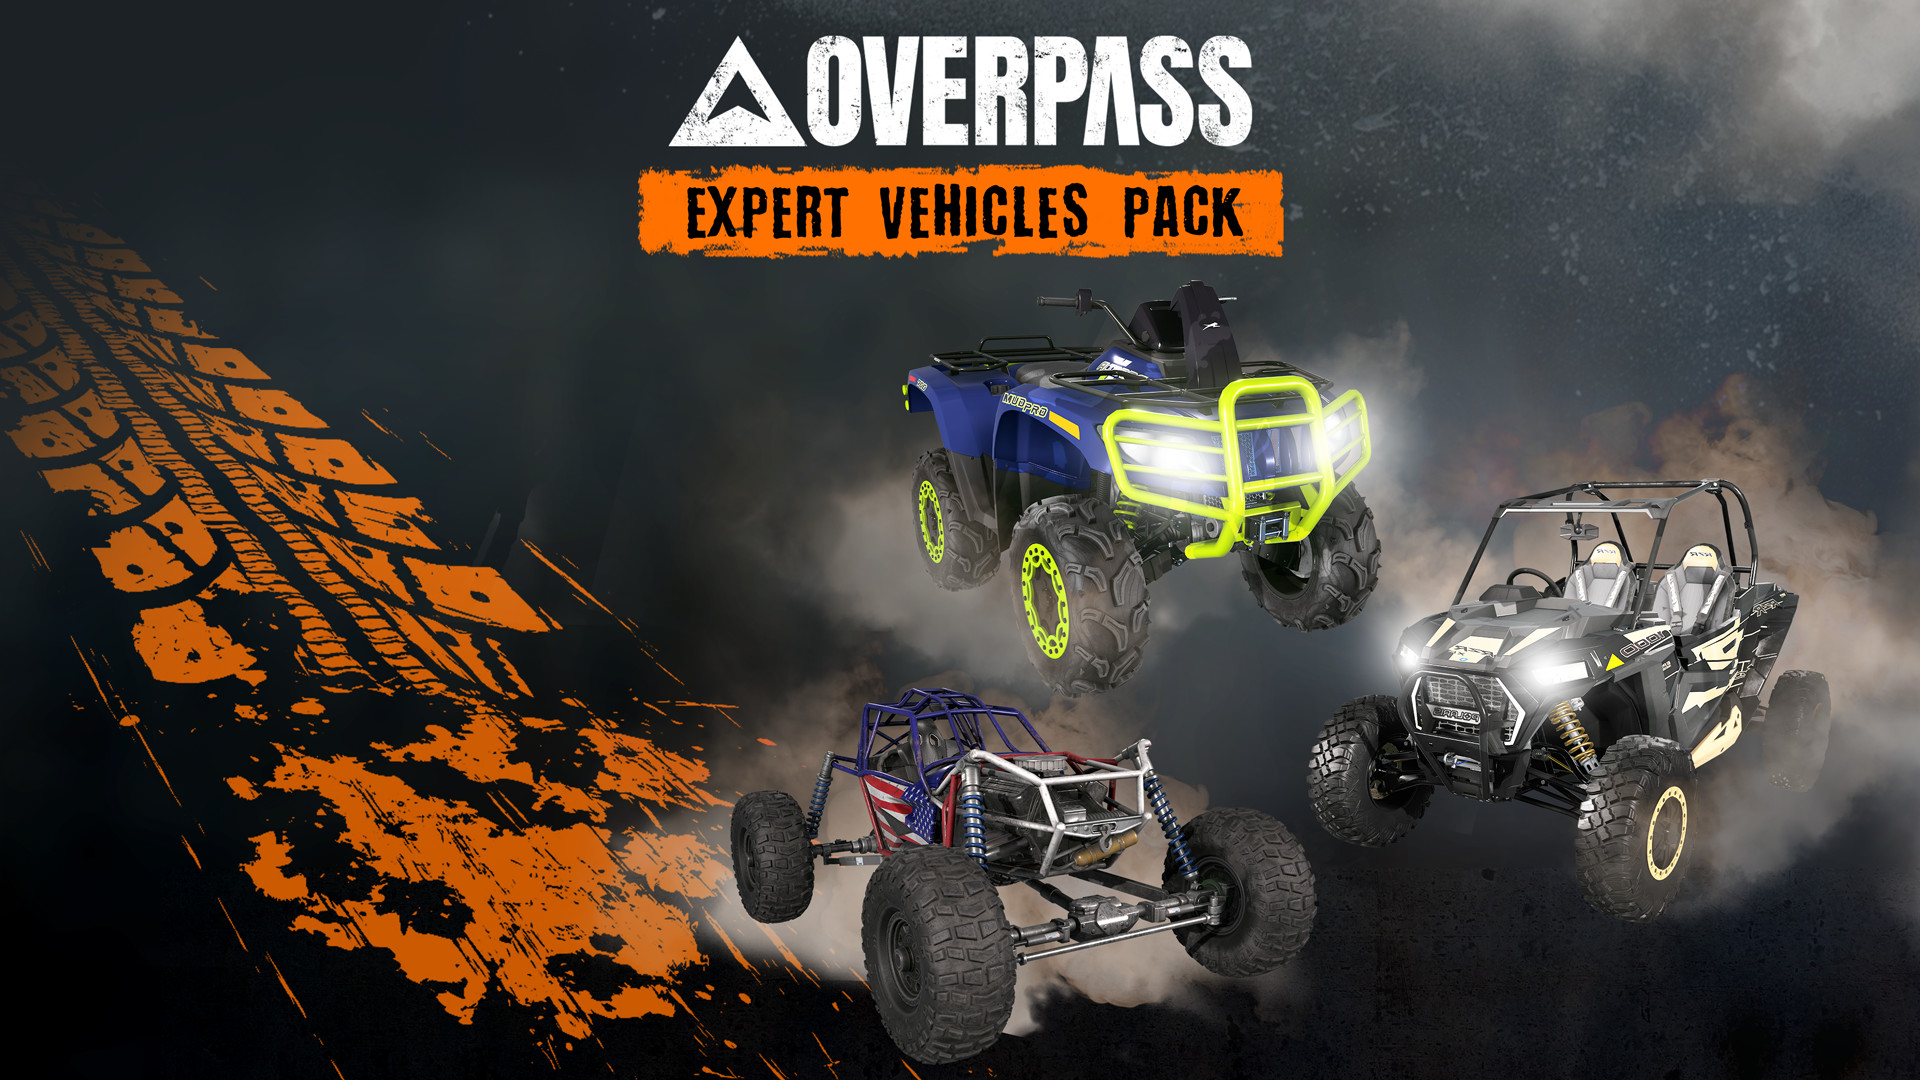 OVERPASS - Expert Vehicles Pack DLC Steam CD Key 2.36 usd